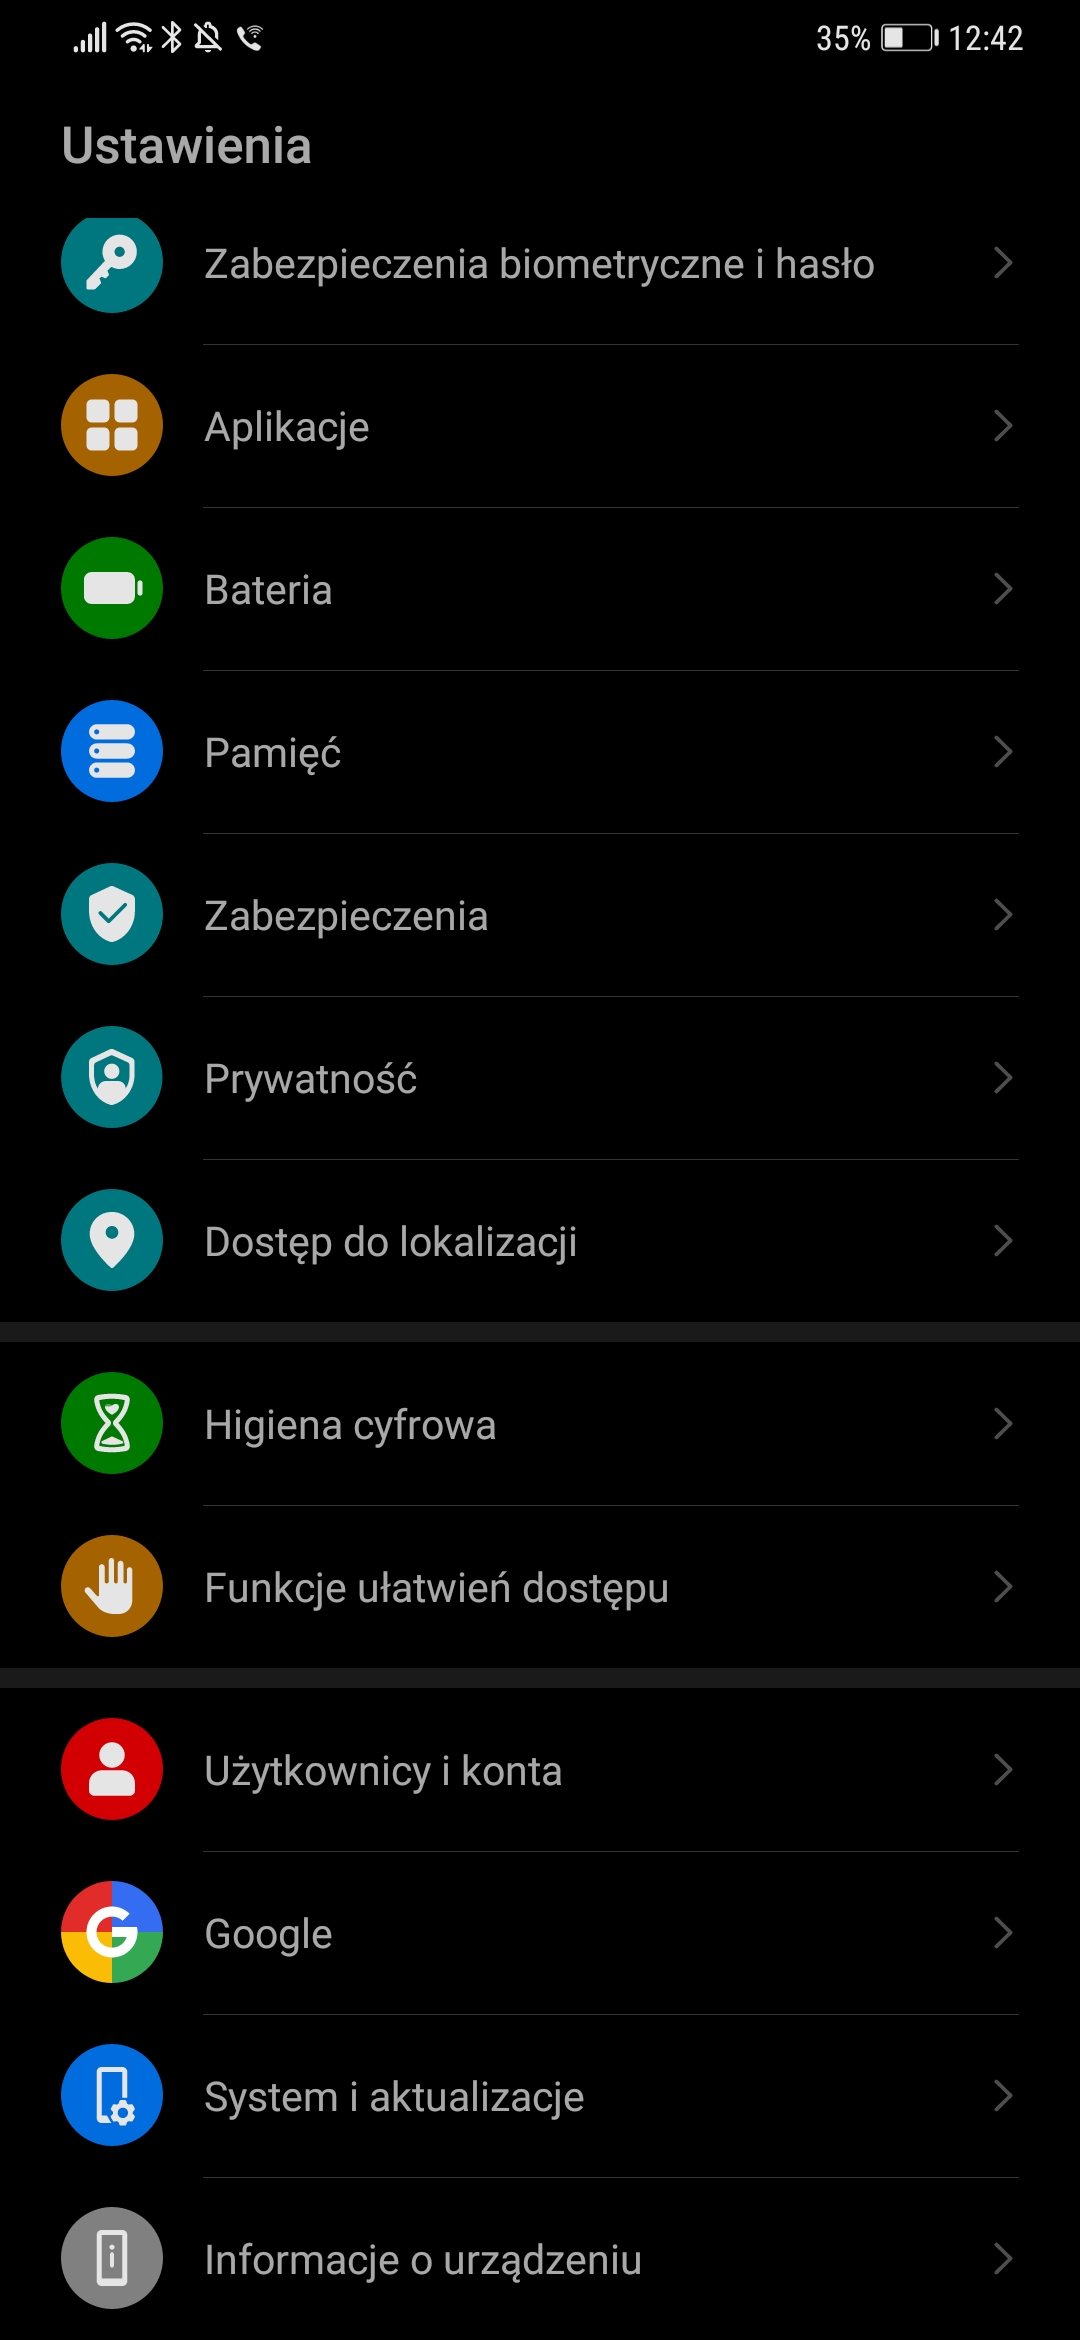 Huawei Android 10 EMUI 10 beta